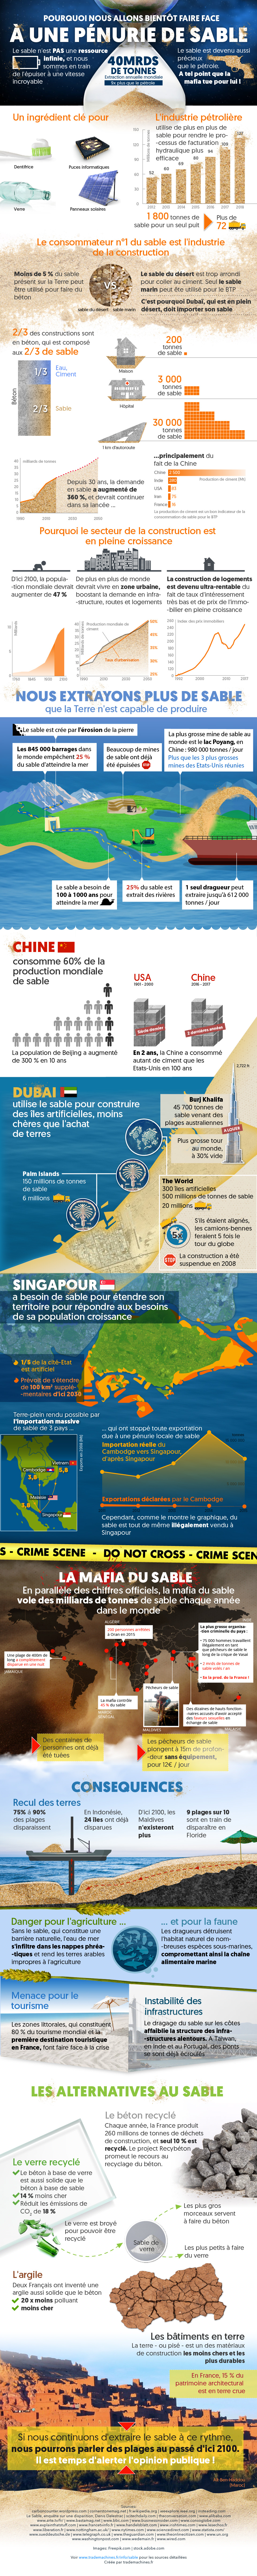 infographie complète sur la pénurie de sable : chiffres, raisons, conséquences, alternatives....